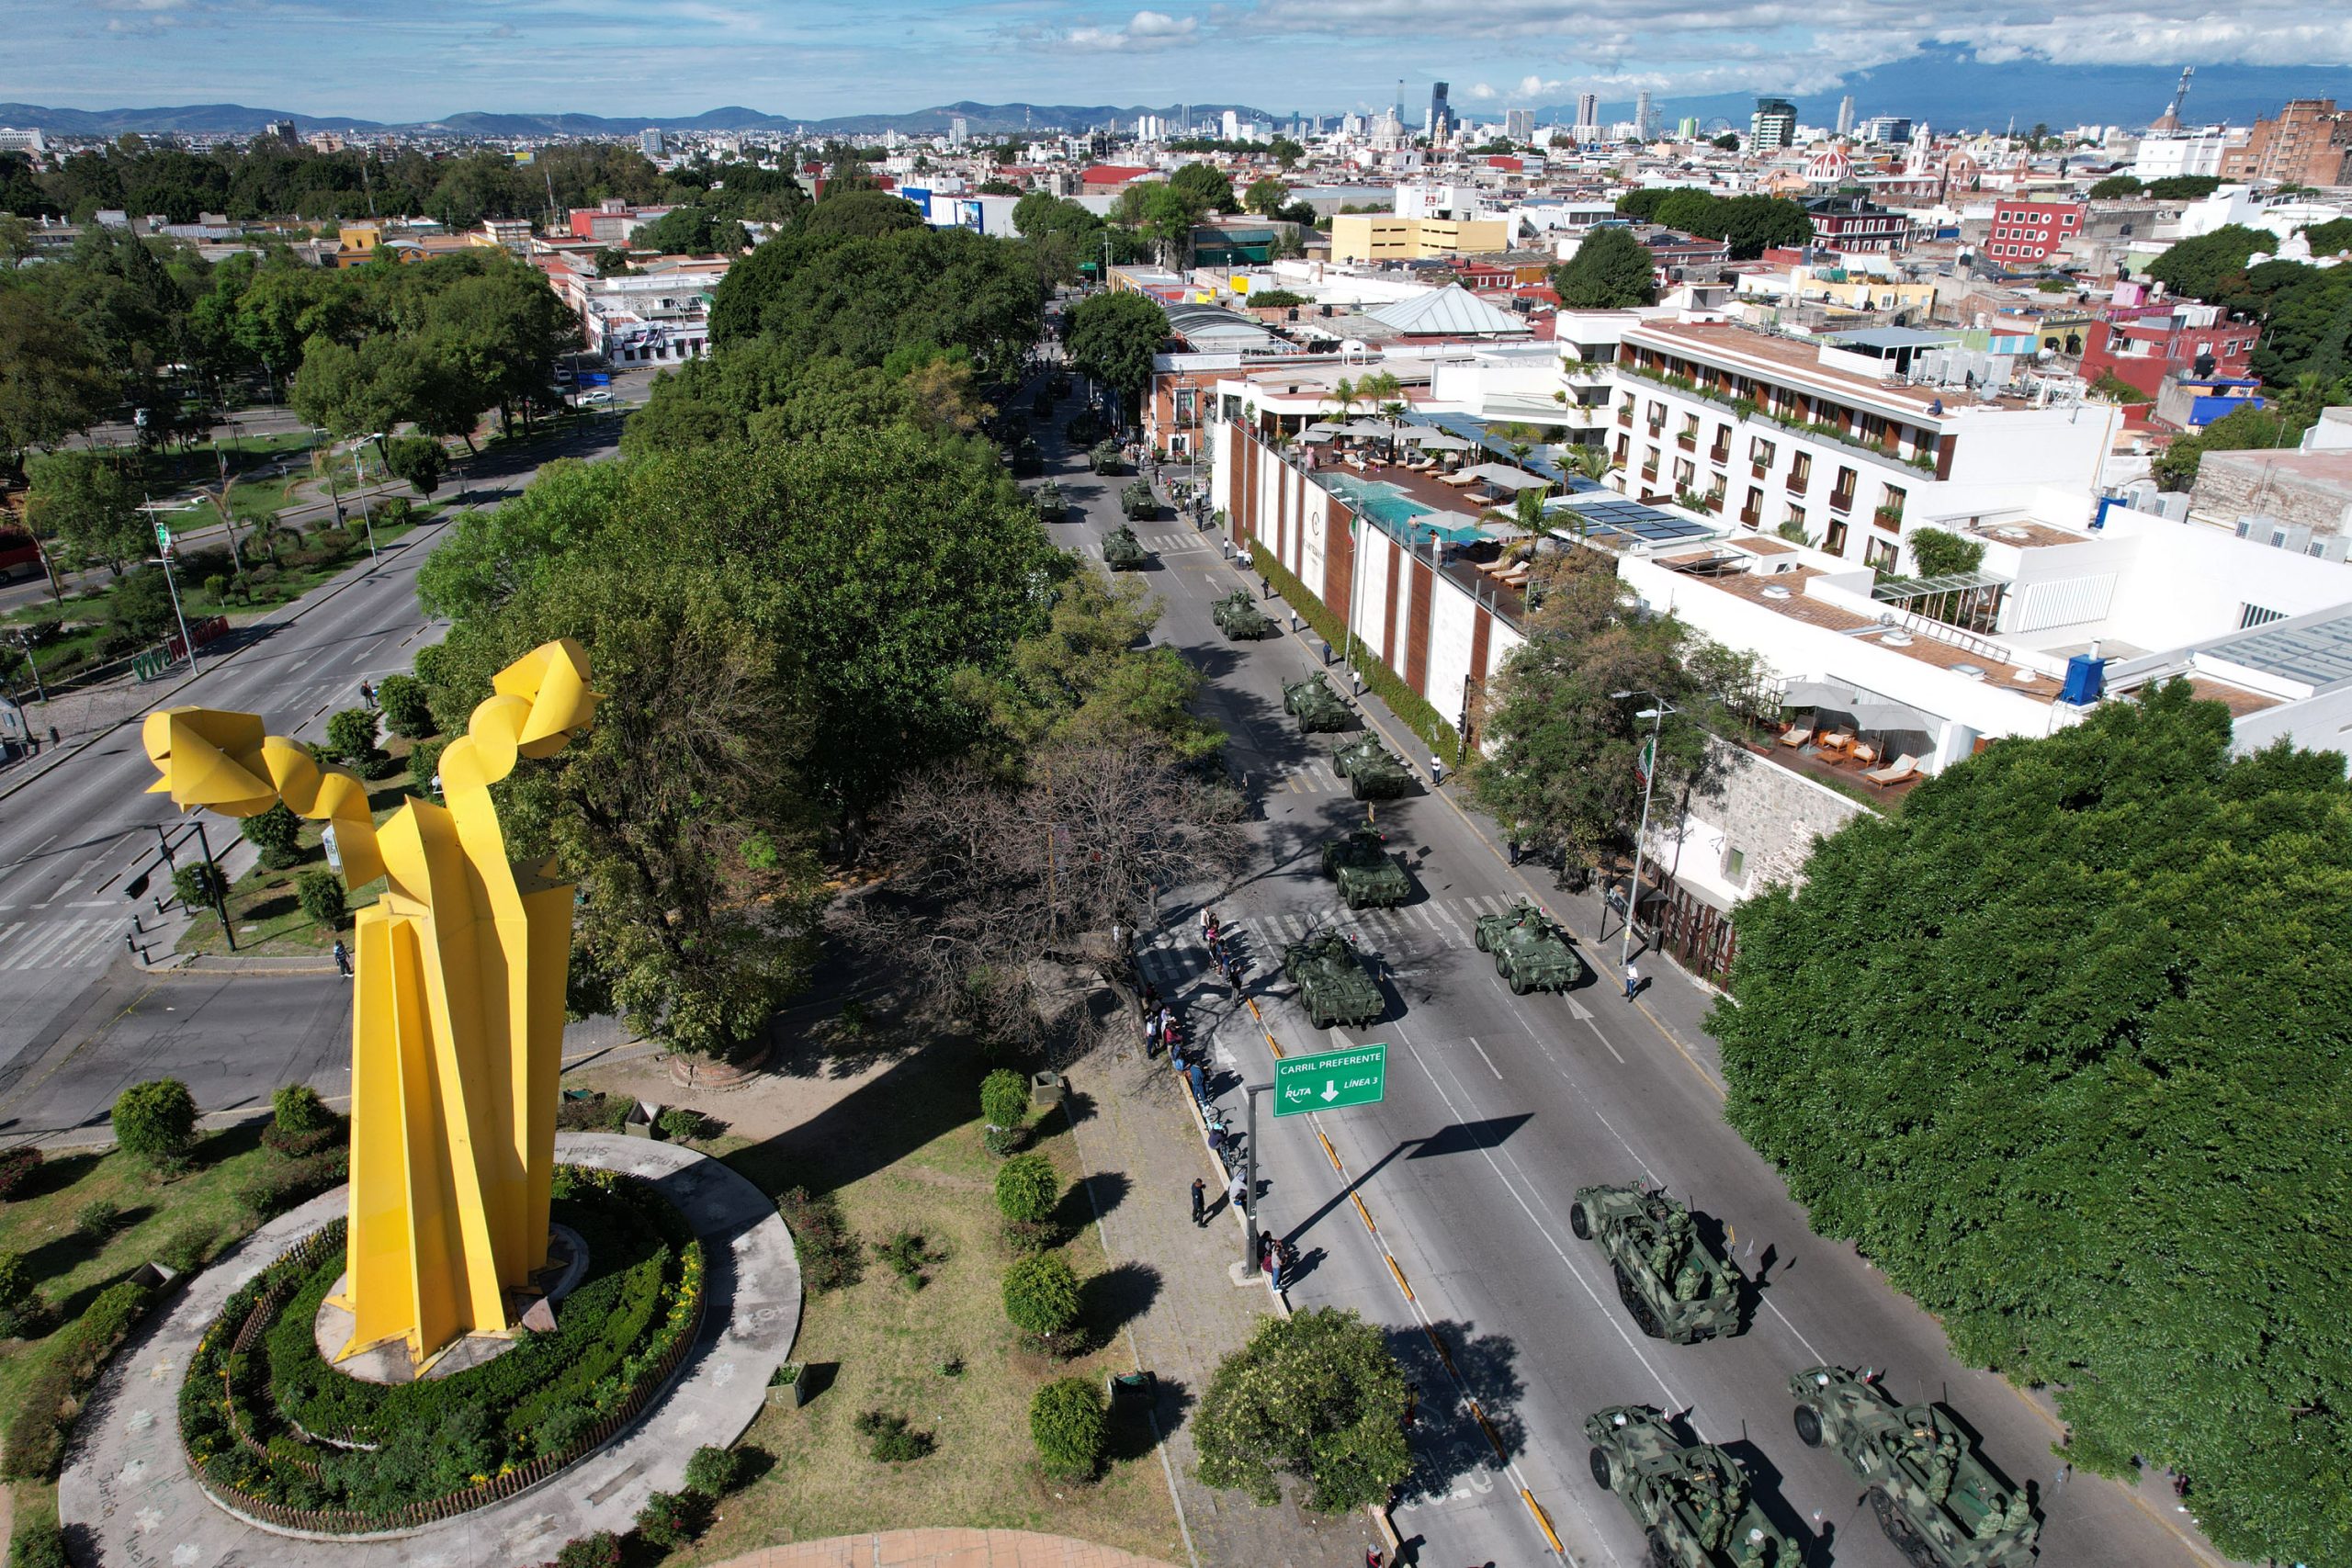 Militares, charros y naranjitas desfilan en Puebla